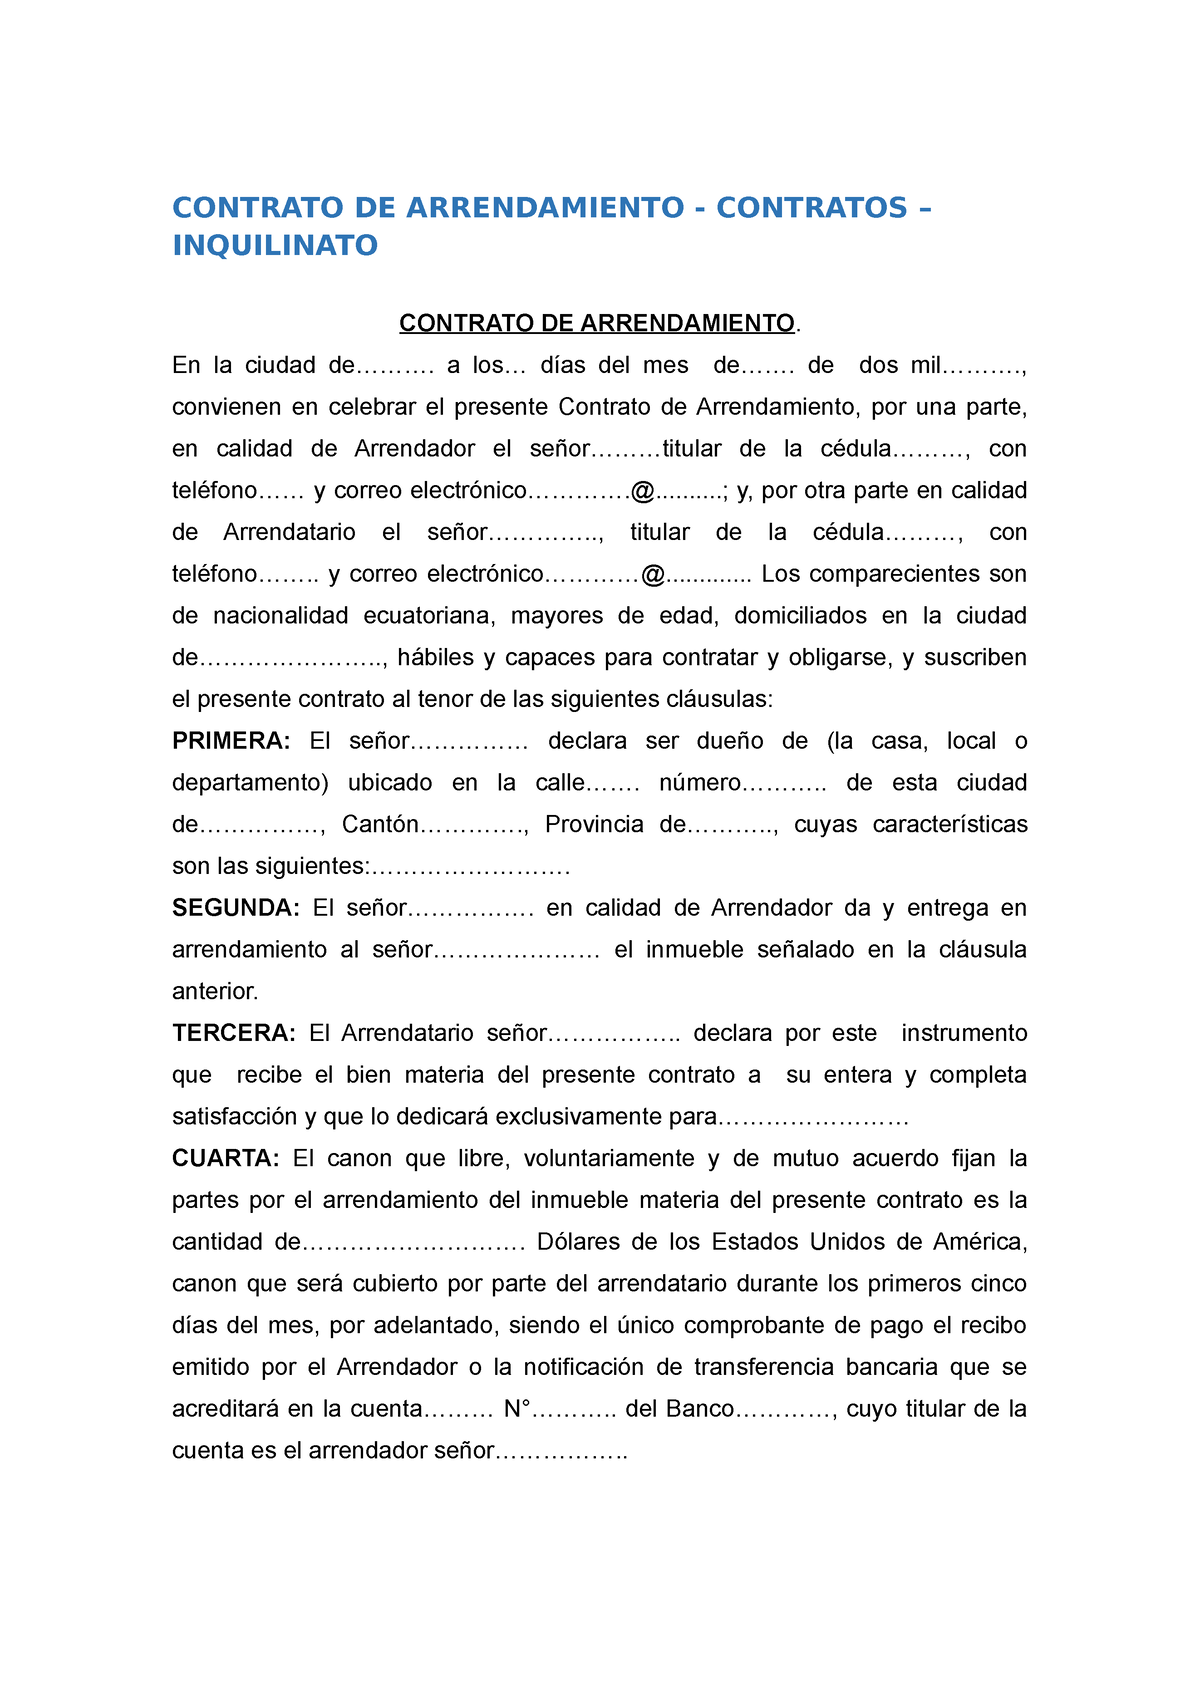 Contrato De Arrendamiento Contrato De Arrendamiento Contratos Inquilinato Contrato De 8982